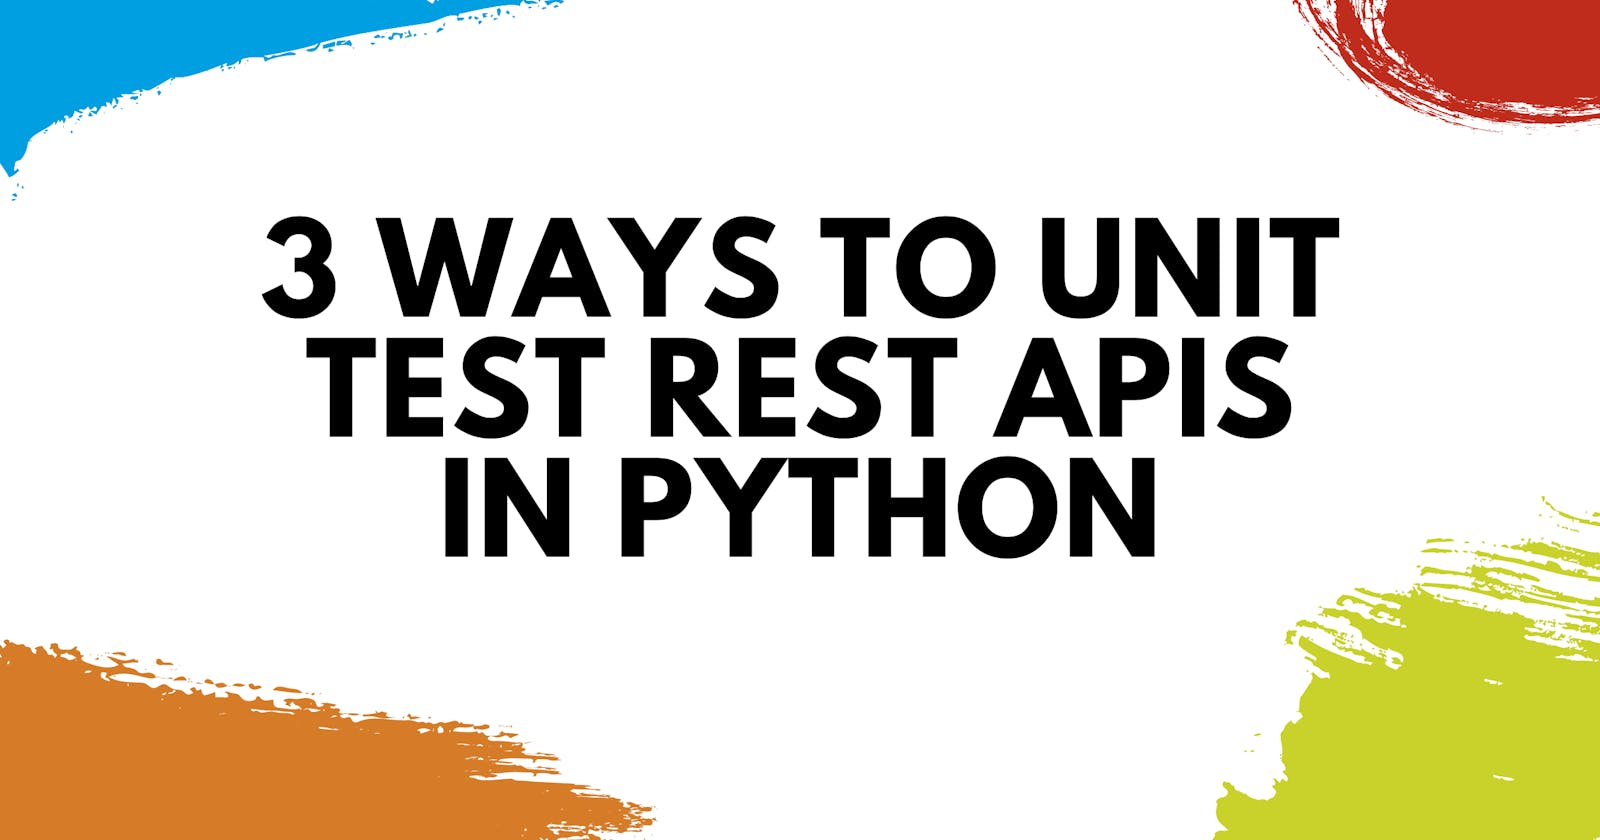 3 Ways to Unit Test REST APIs in Python